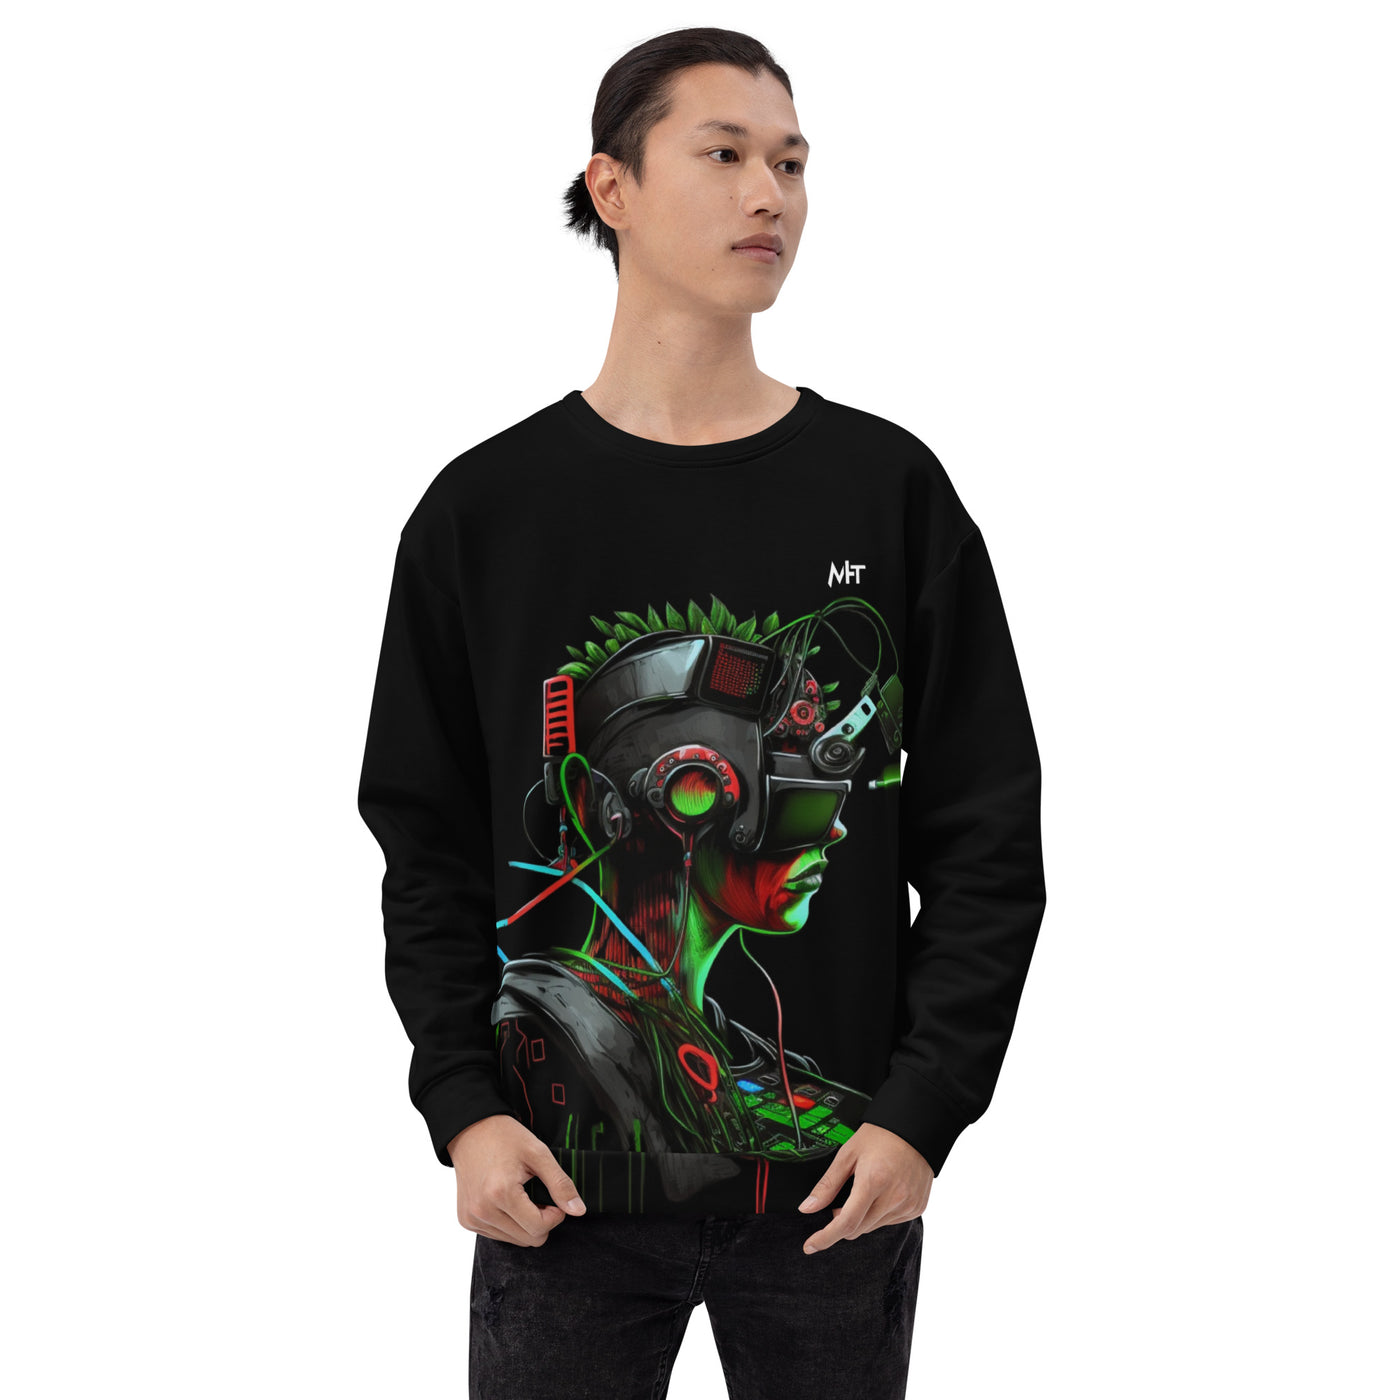 CyberWare Assassin V17 - Unisex Sweatshirt